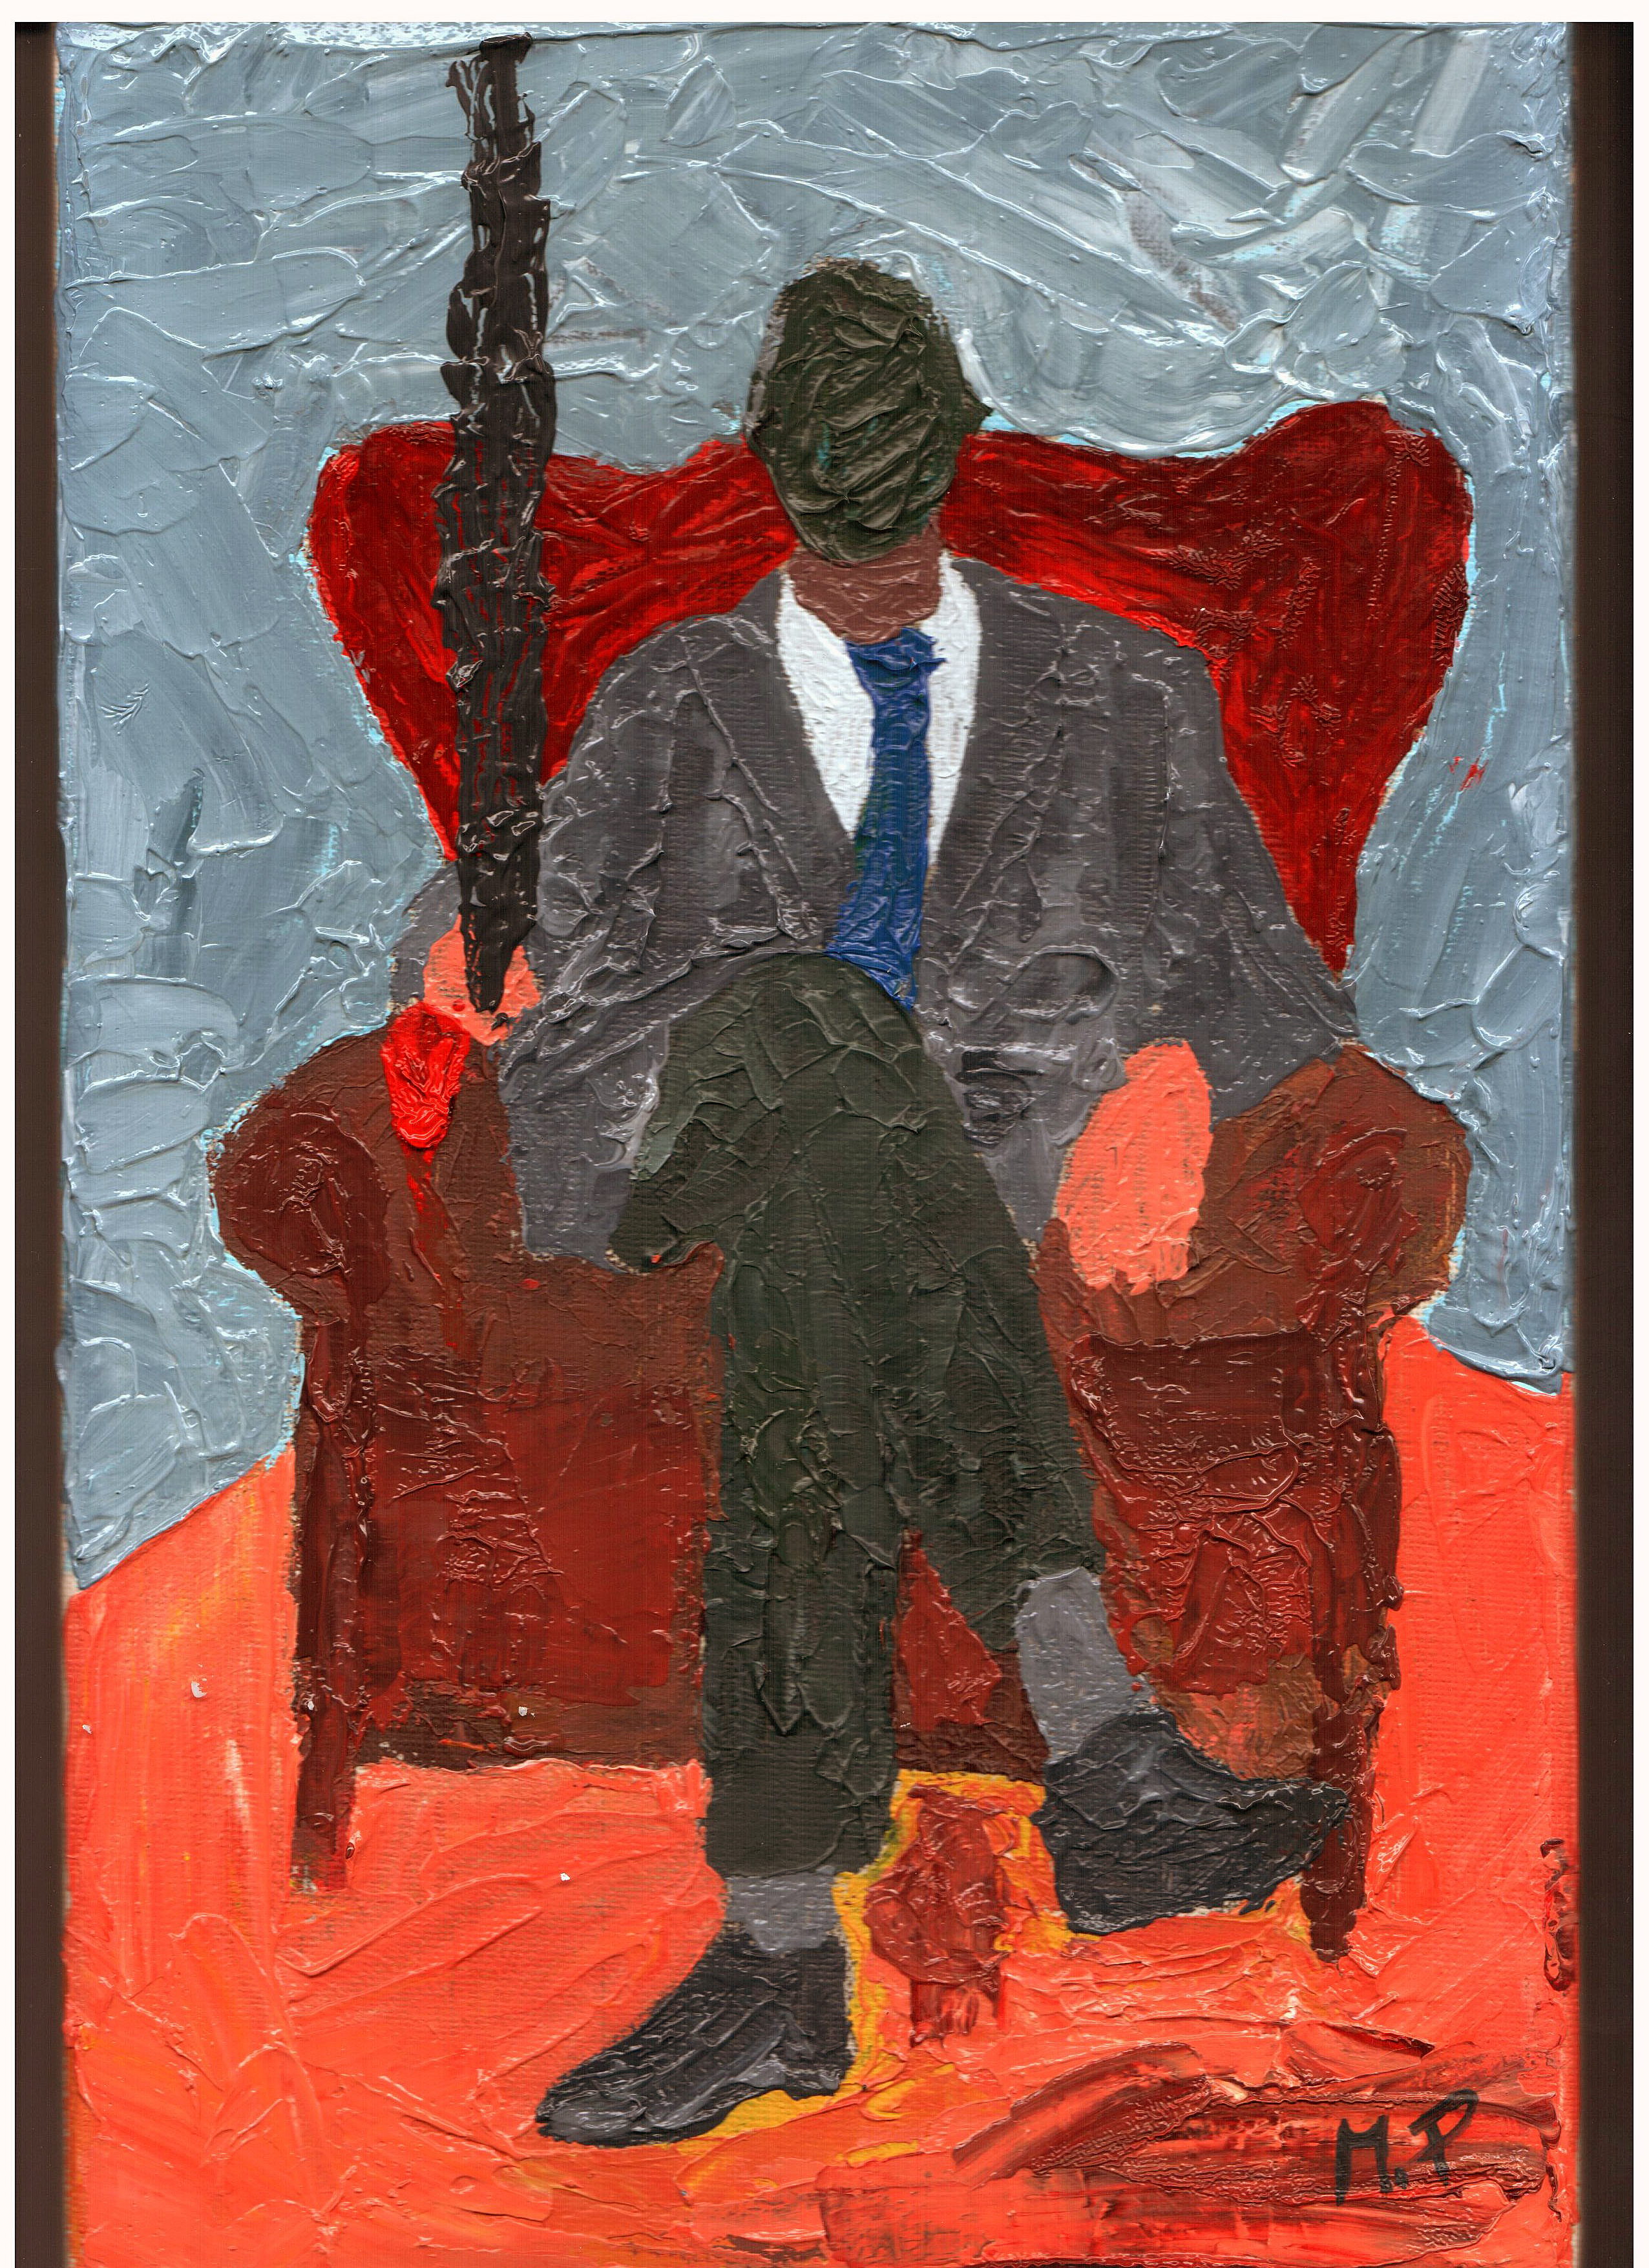 Storico che contempla il presente (Historical contemplating this), 2015 dipinto olio su tela (oil on canvas), cm 20x30, Pasquale Mastrogiacomo, Acerno (SA).